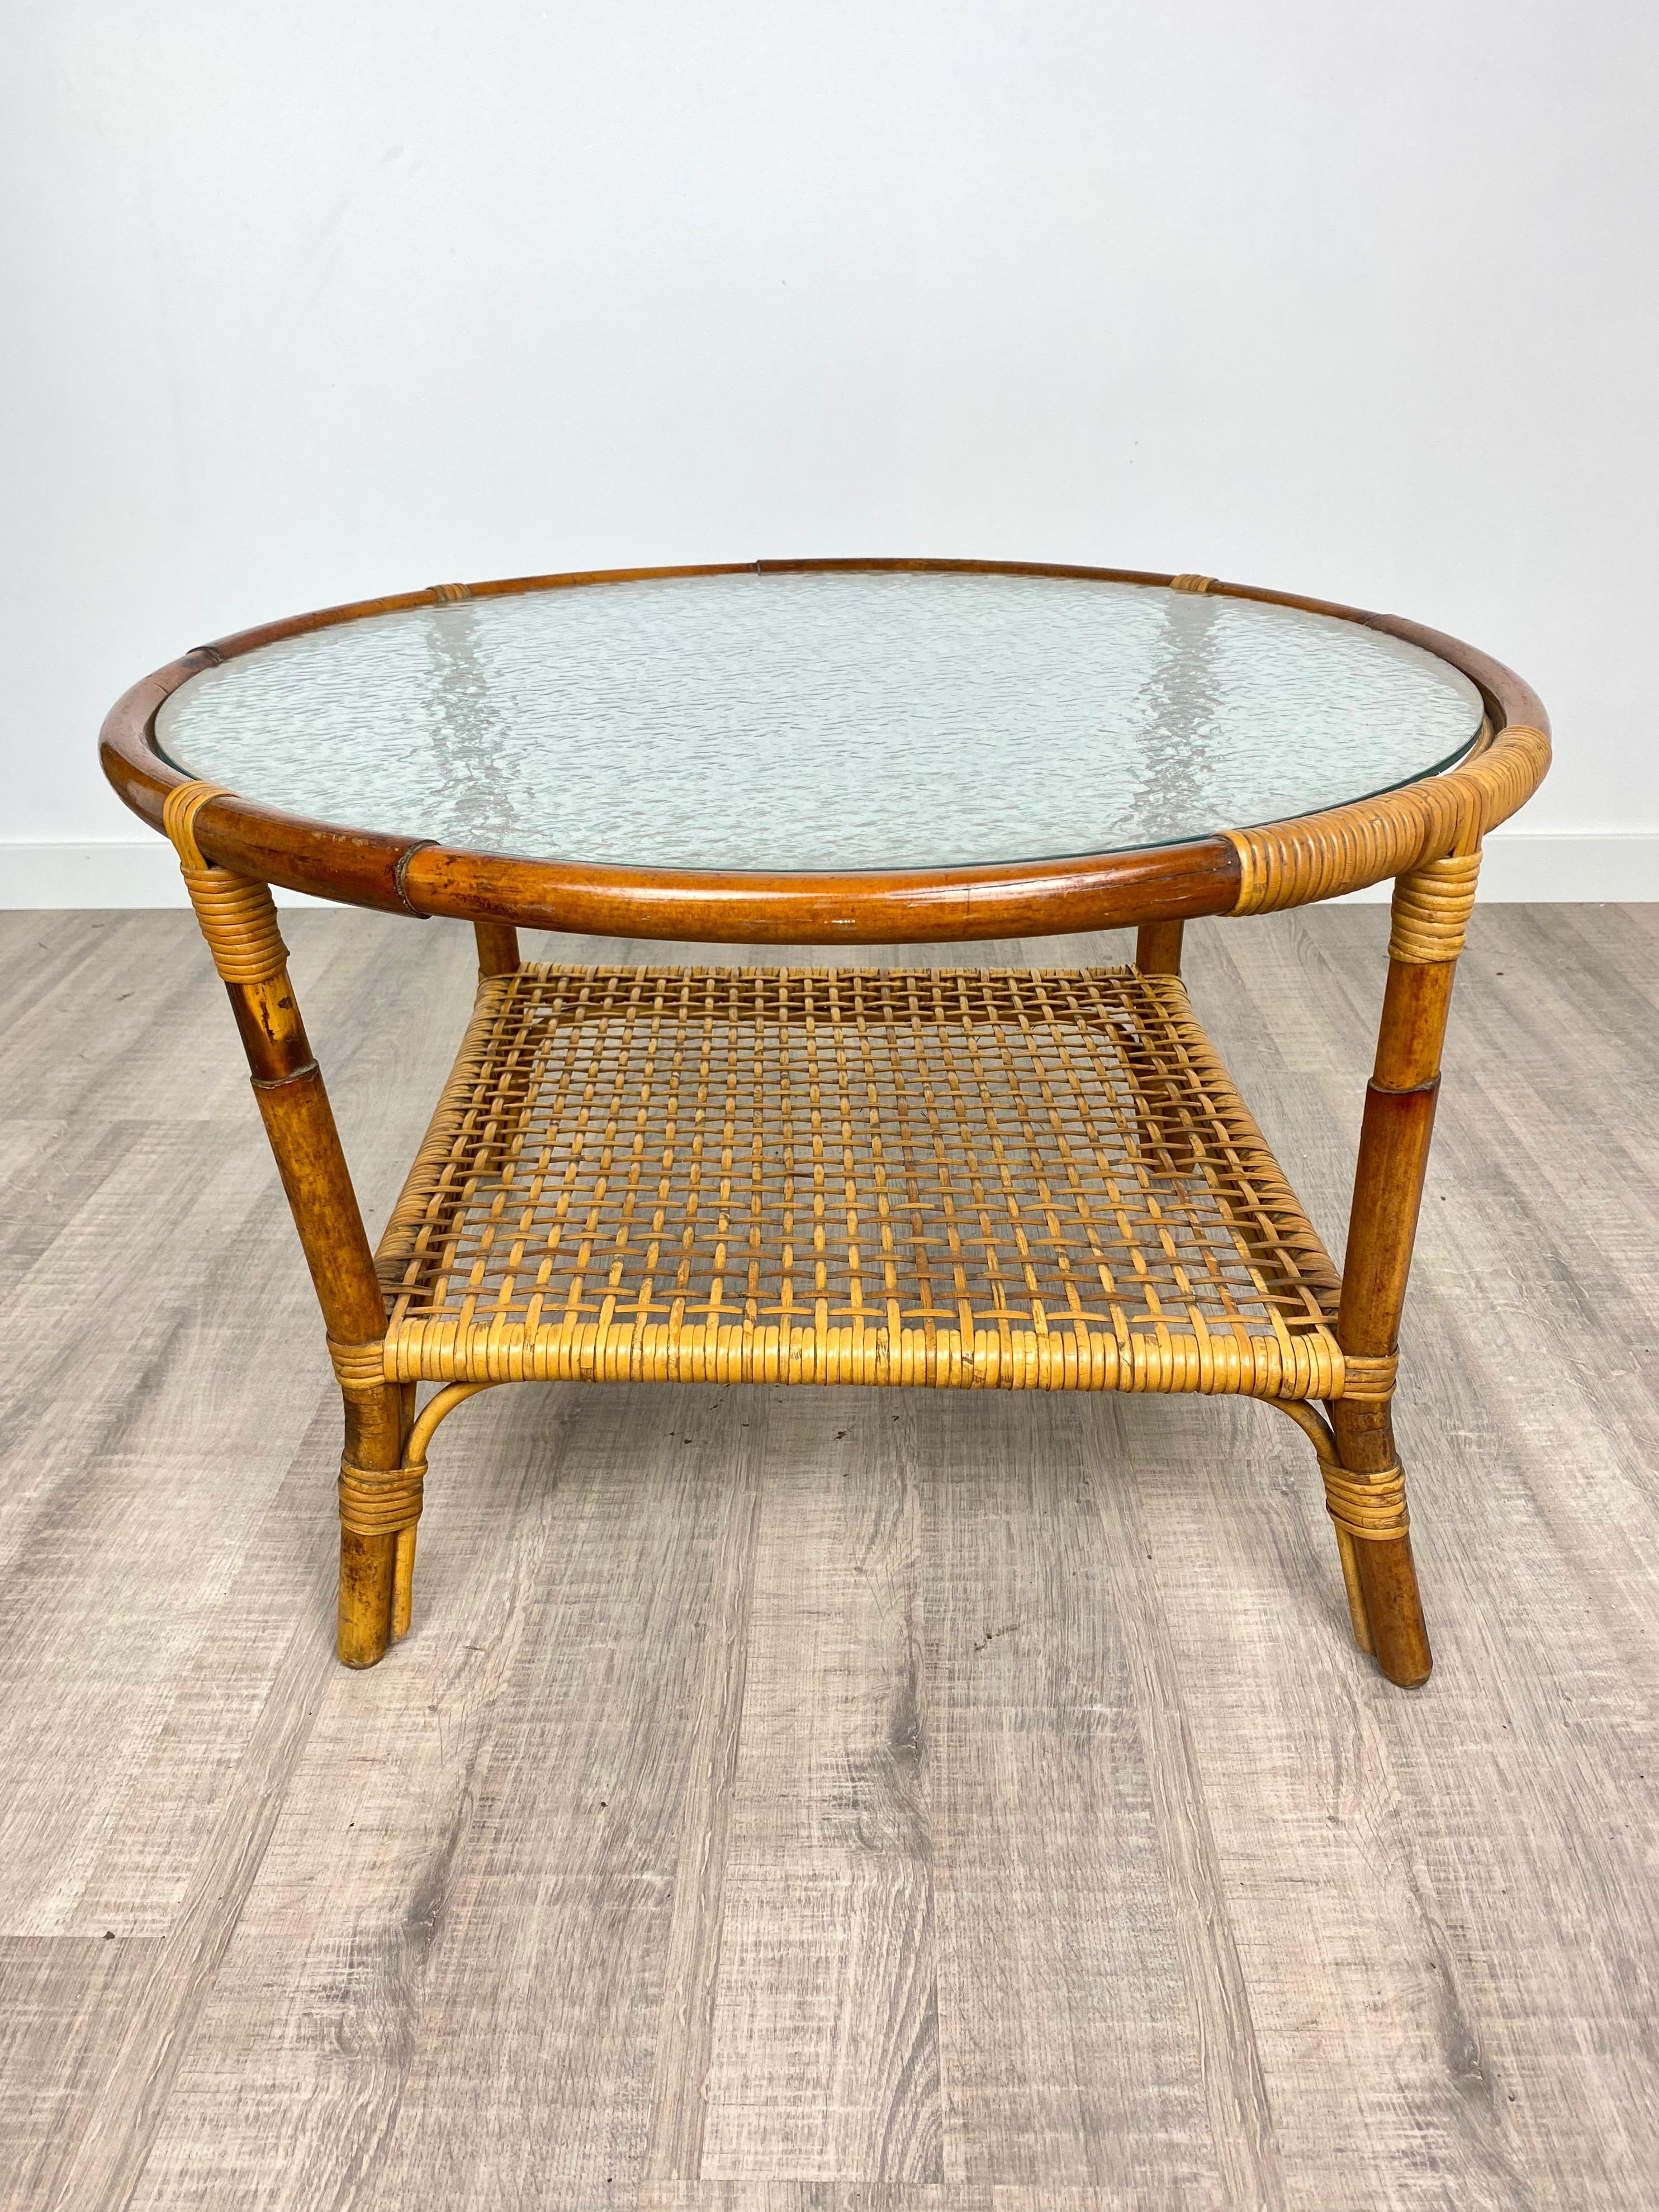 Table basse ronde en structure de bambou présentant une surface en verre dépoli et une étagère inférieure en filet de bambou, Italie, vers 1960.